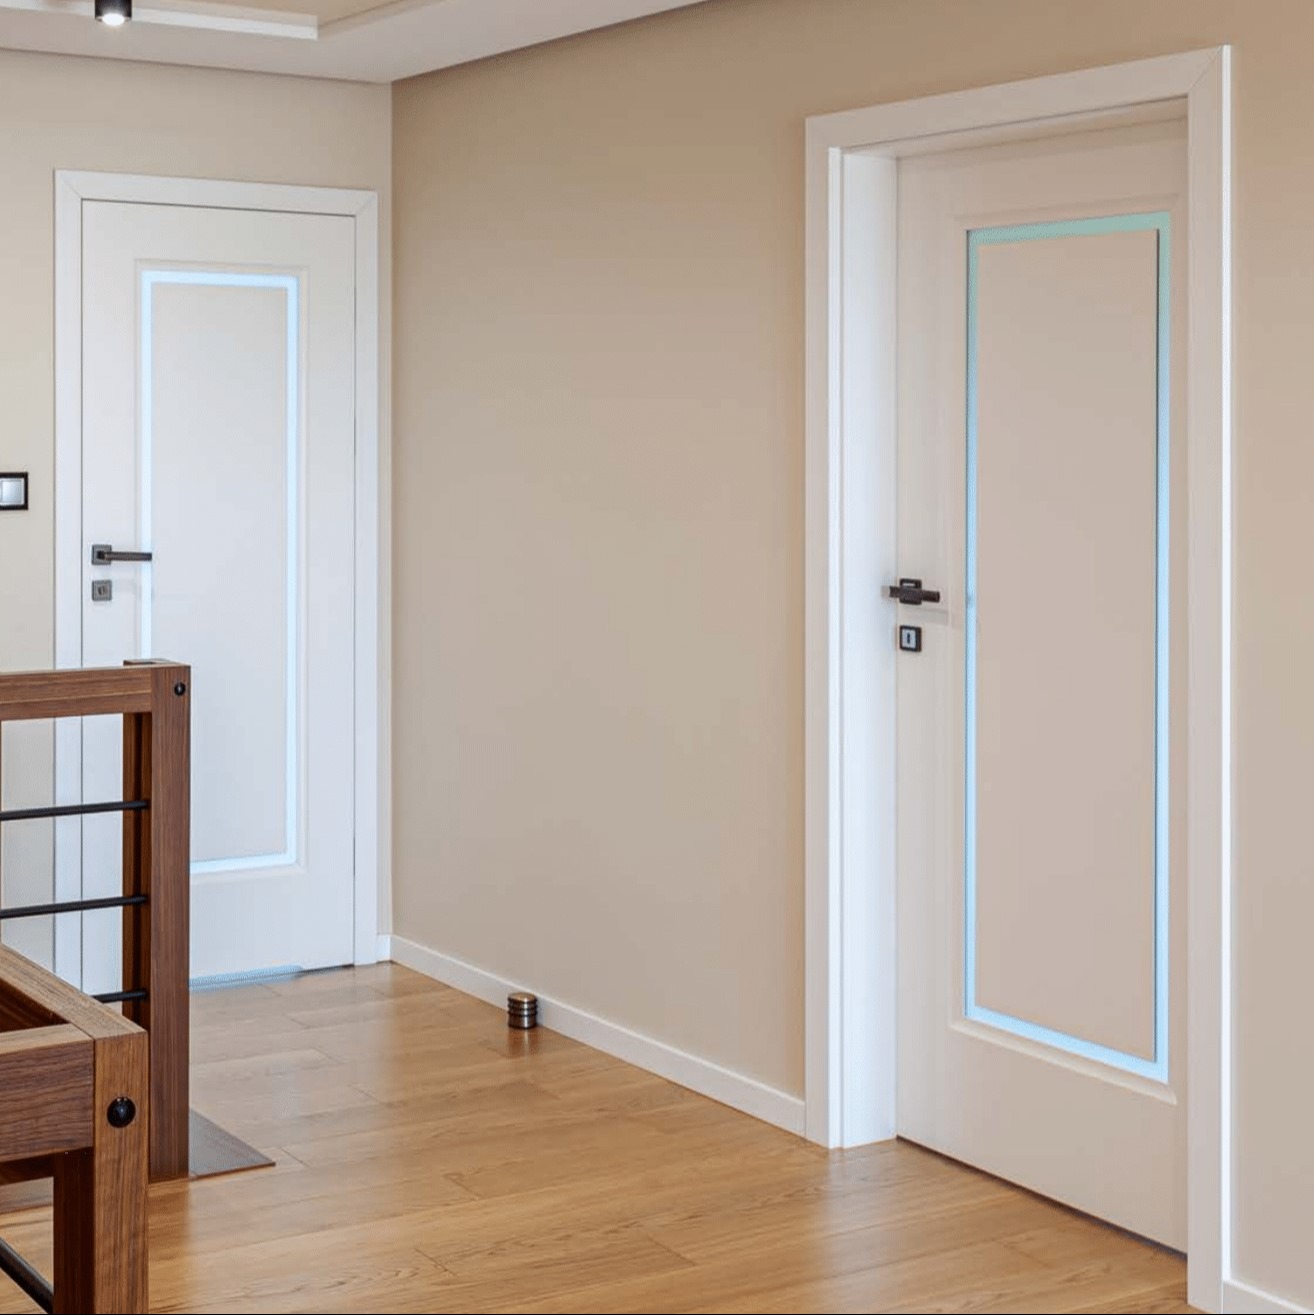 Drzwi lakierowane czy okleinowane, które są lepsze?